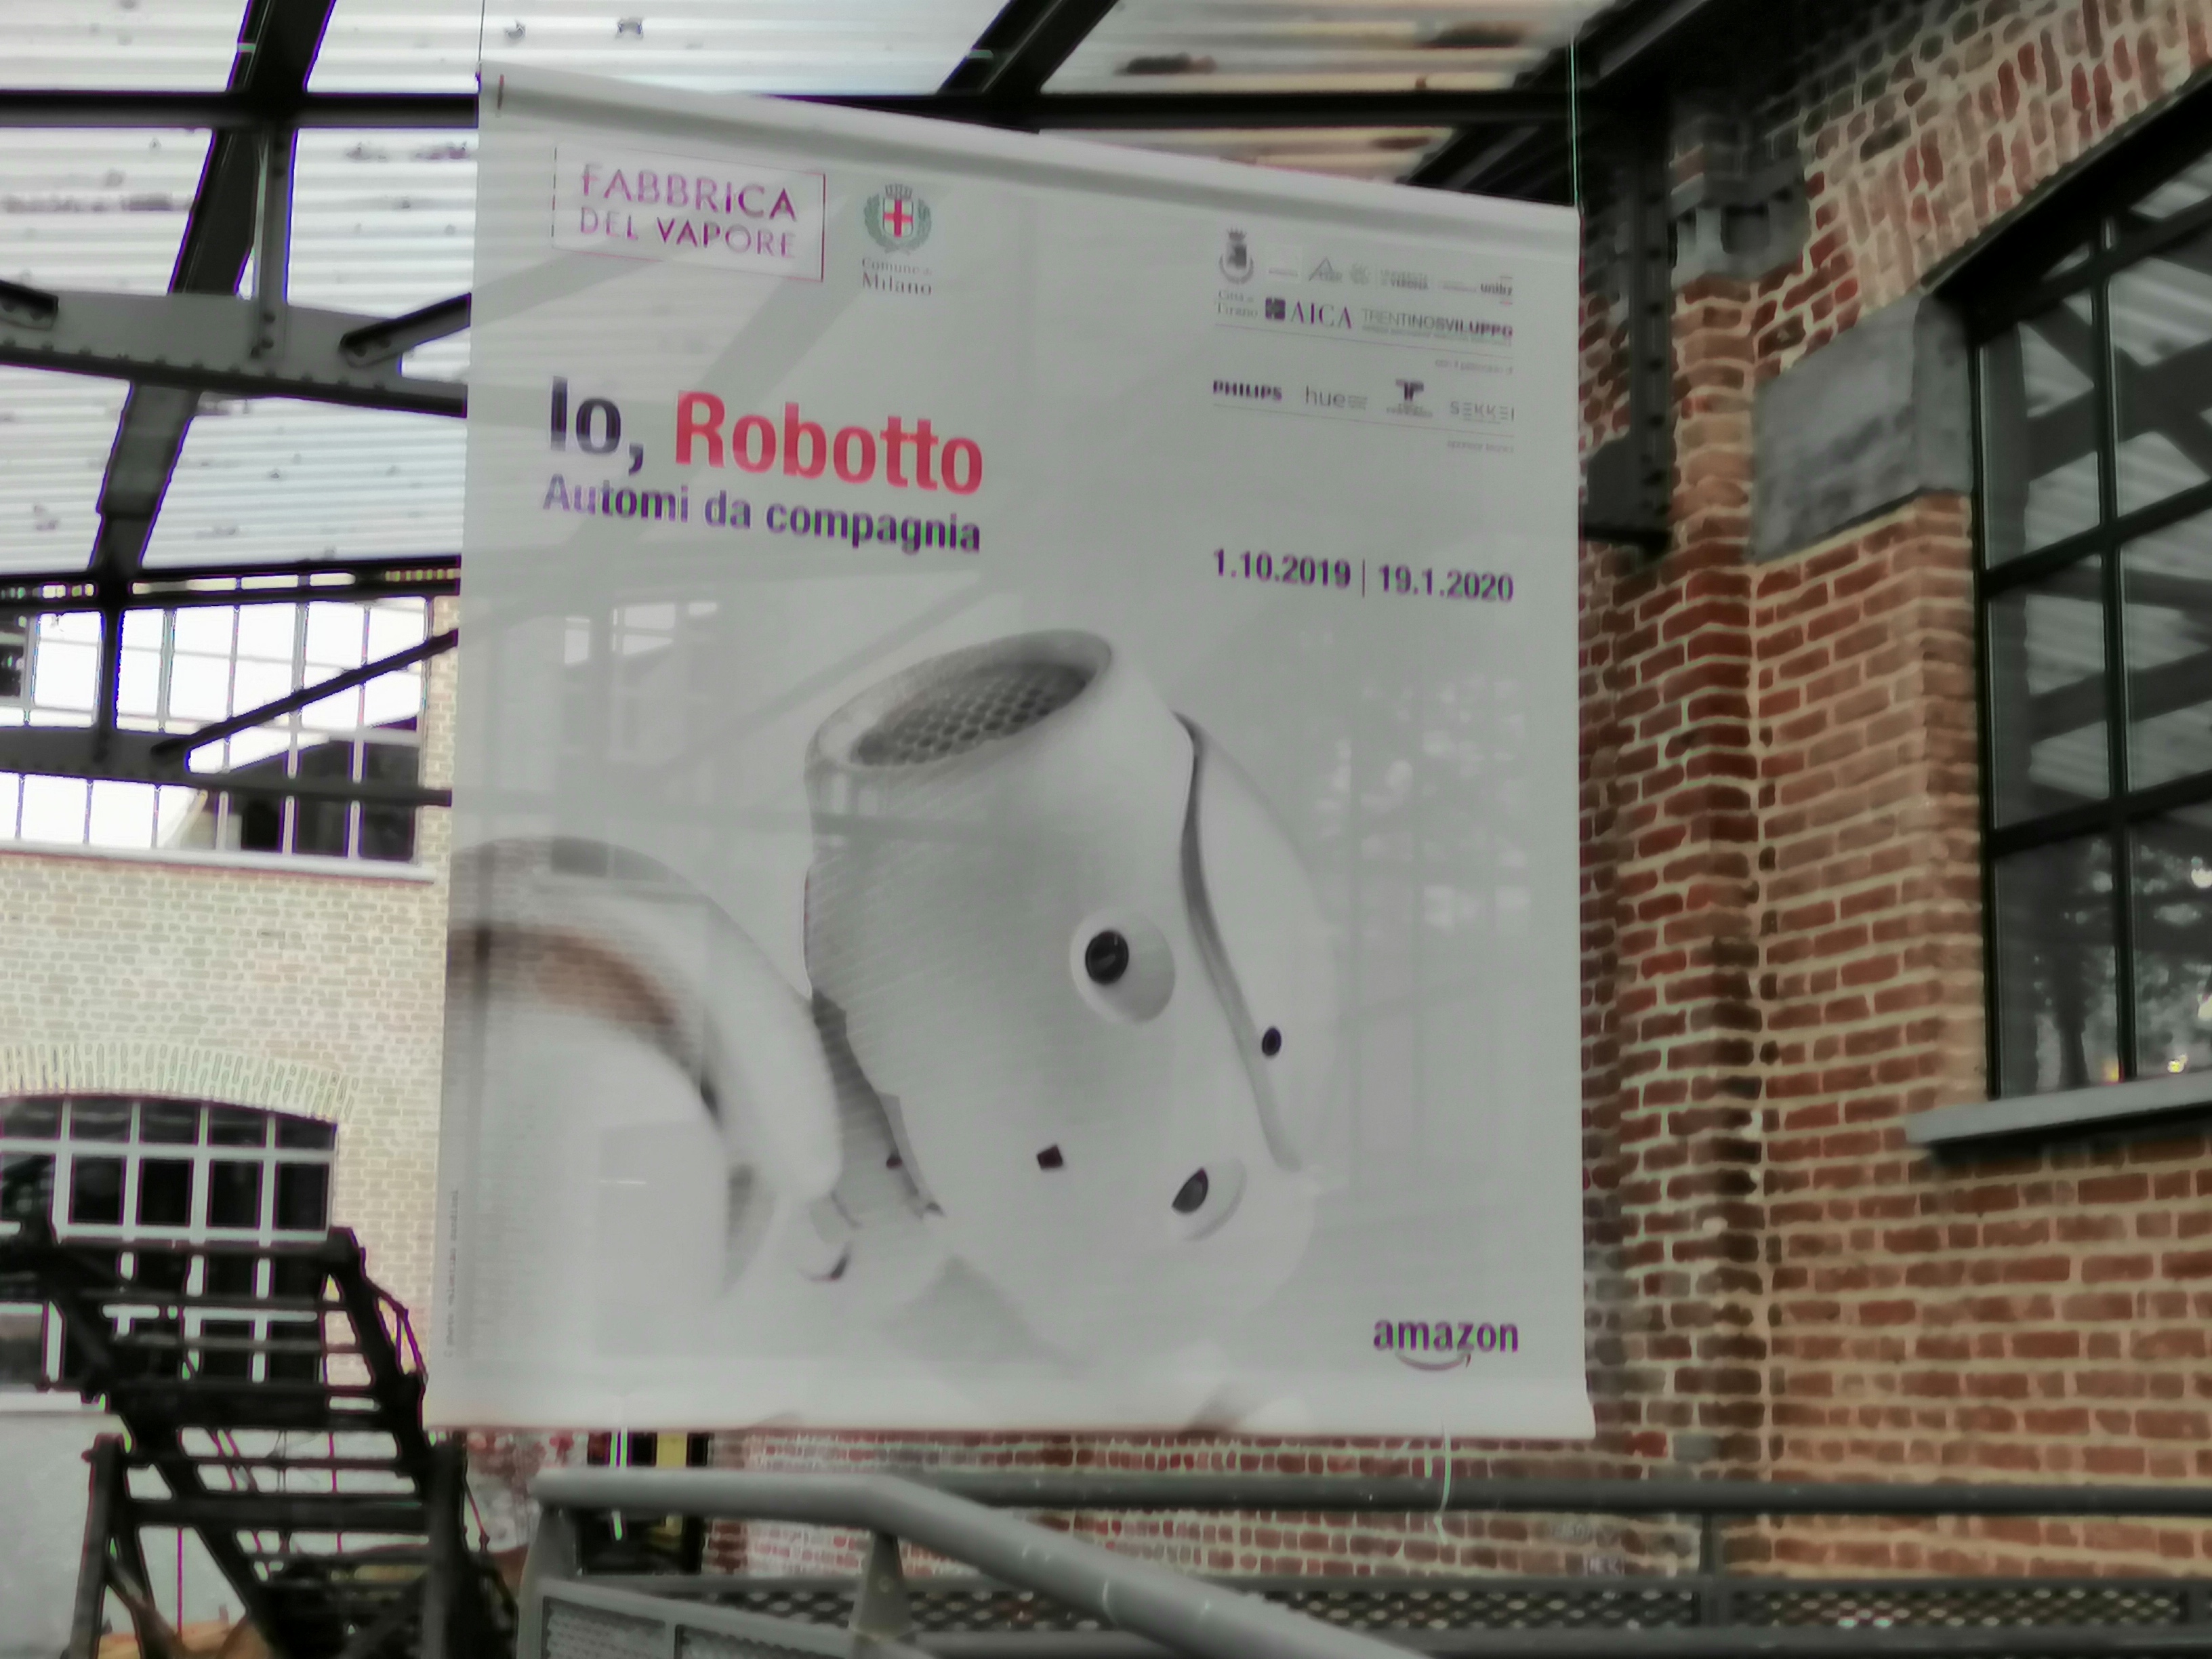 IMG 20191010 182946 - Io,Robotto automi da compagnia- la mostra dei robot guidata da Amazon Alexa